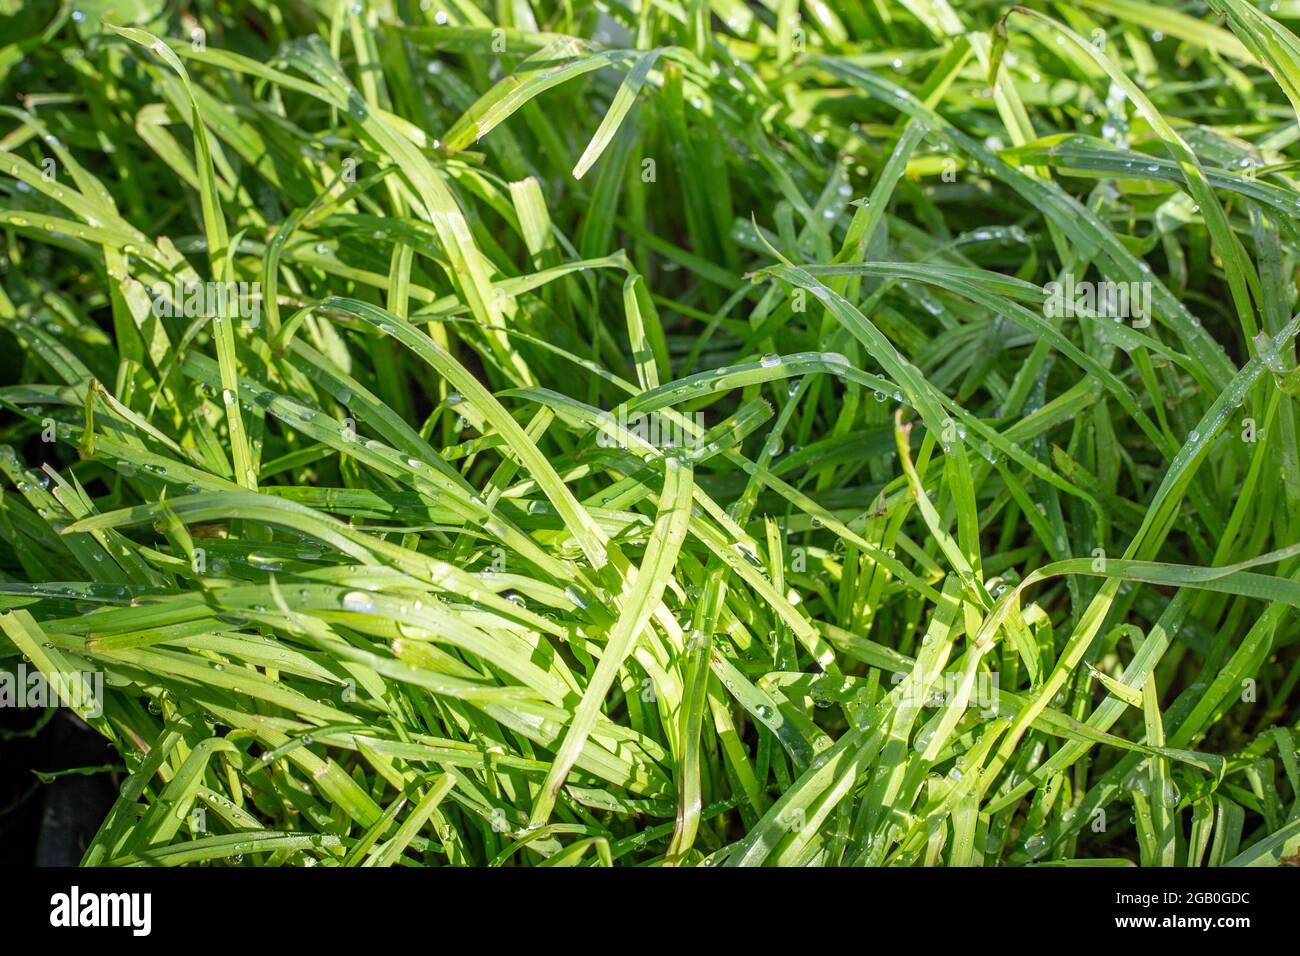 Le pied-de-coq est une herbe profondément enracinement et est habituellement un composant dans le pâturage avec le trèfle, et est tolérant à la sécheresse Banque D'Images